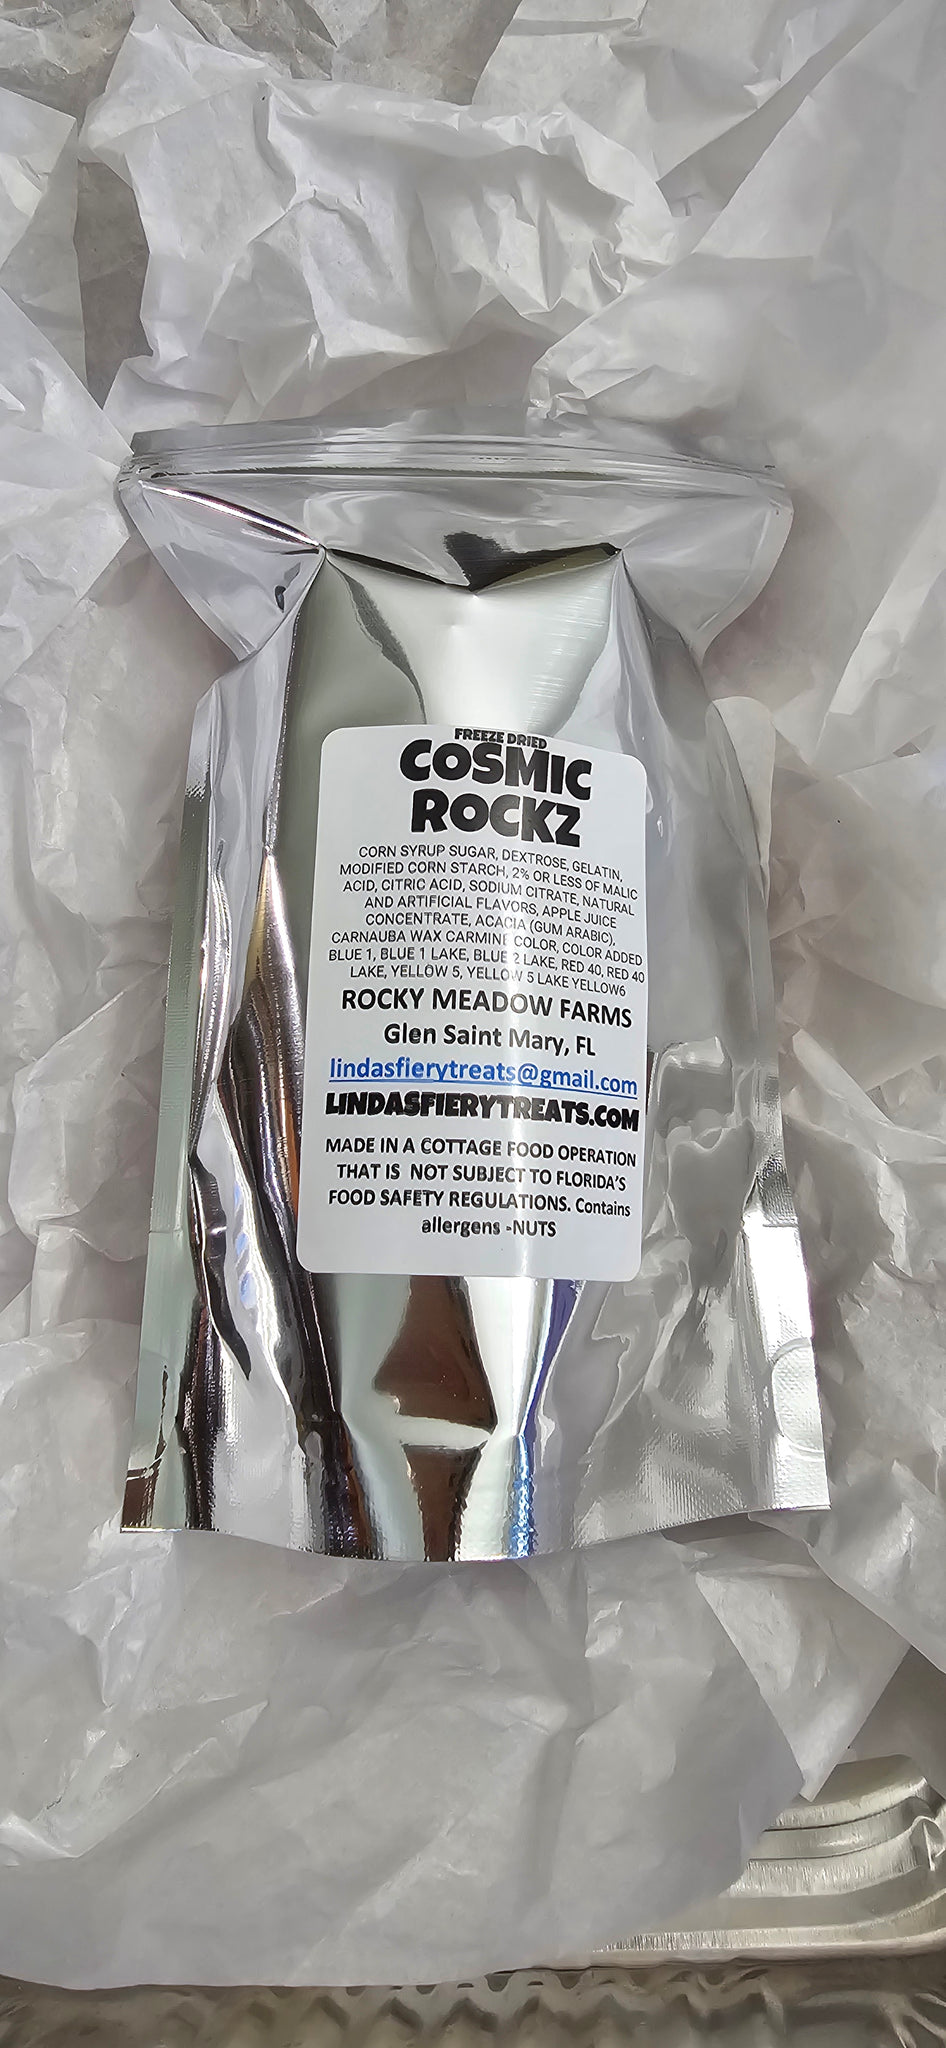 Freeze dried - Cosmic Rockz